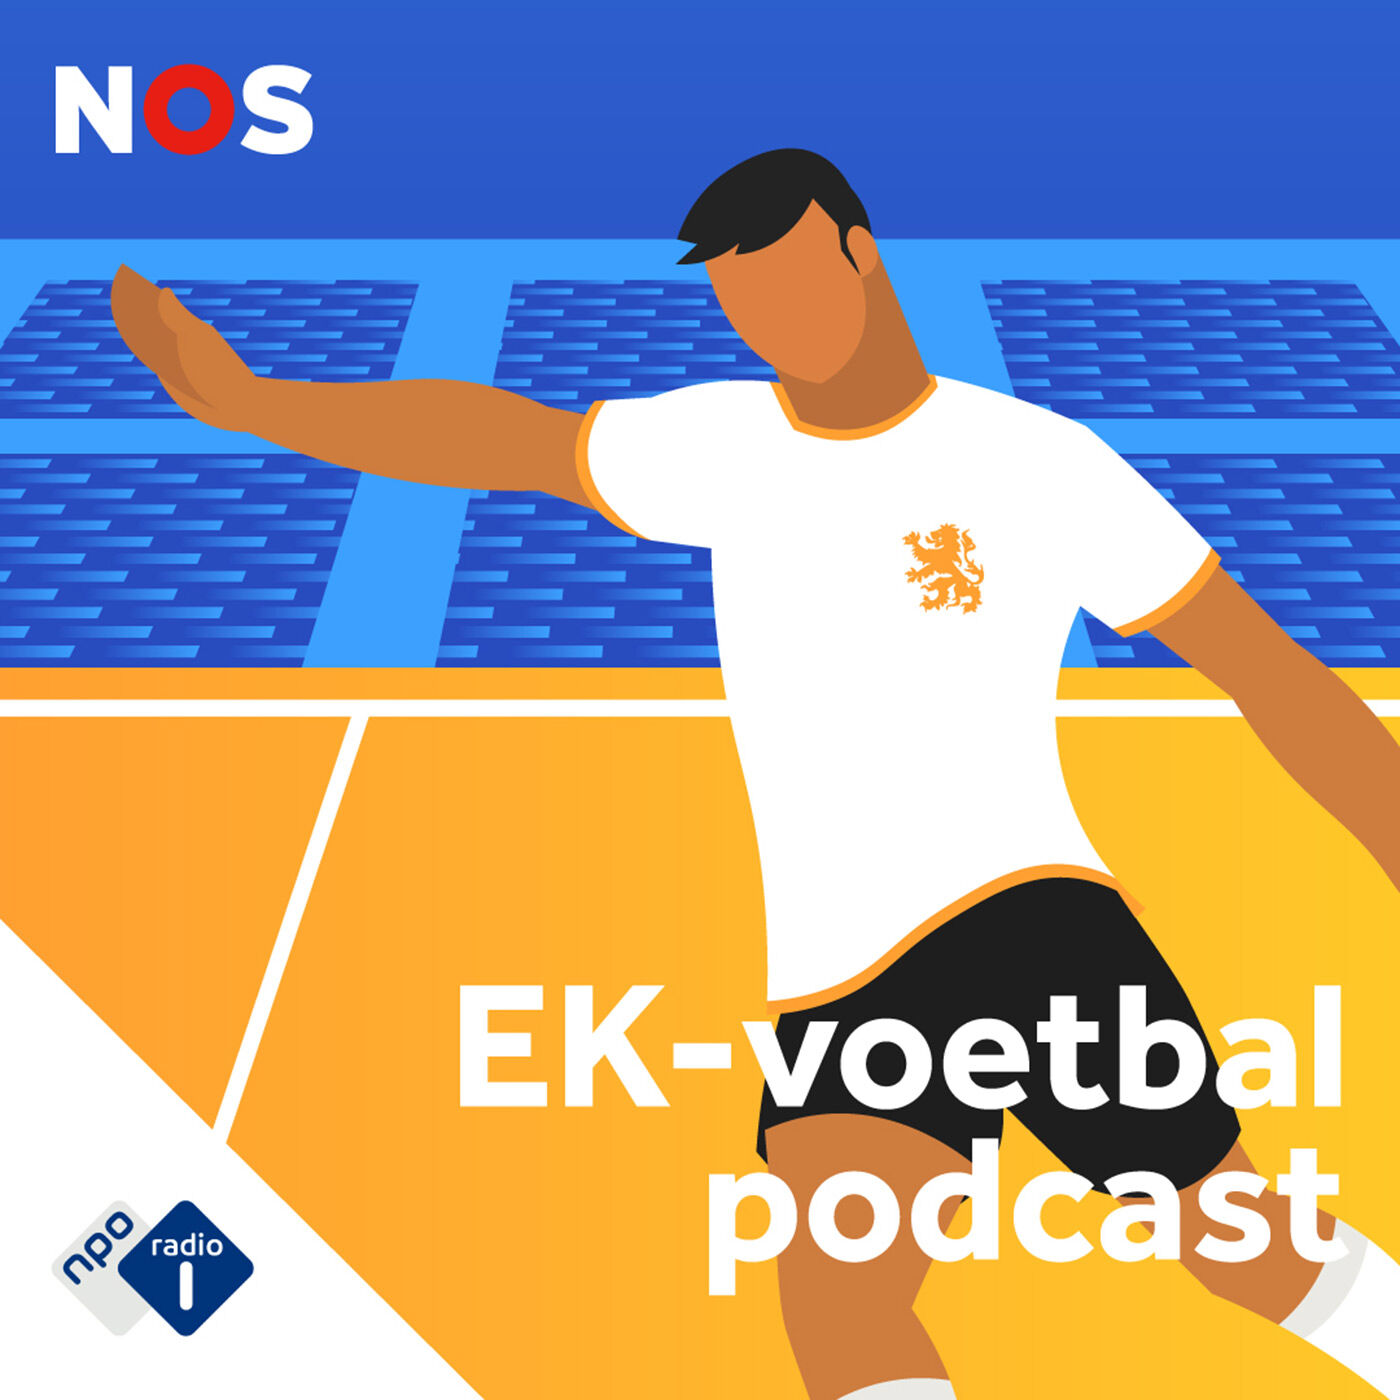 NOS EK-voetbalpodcast logo